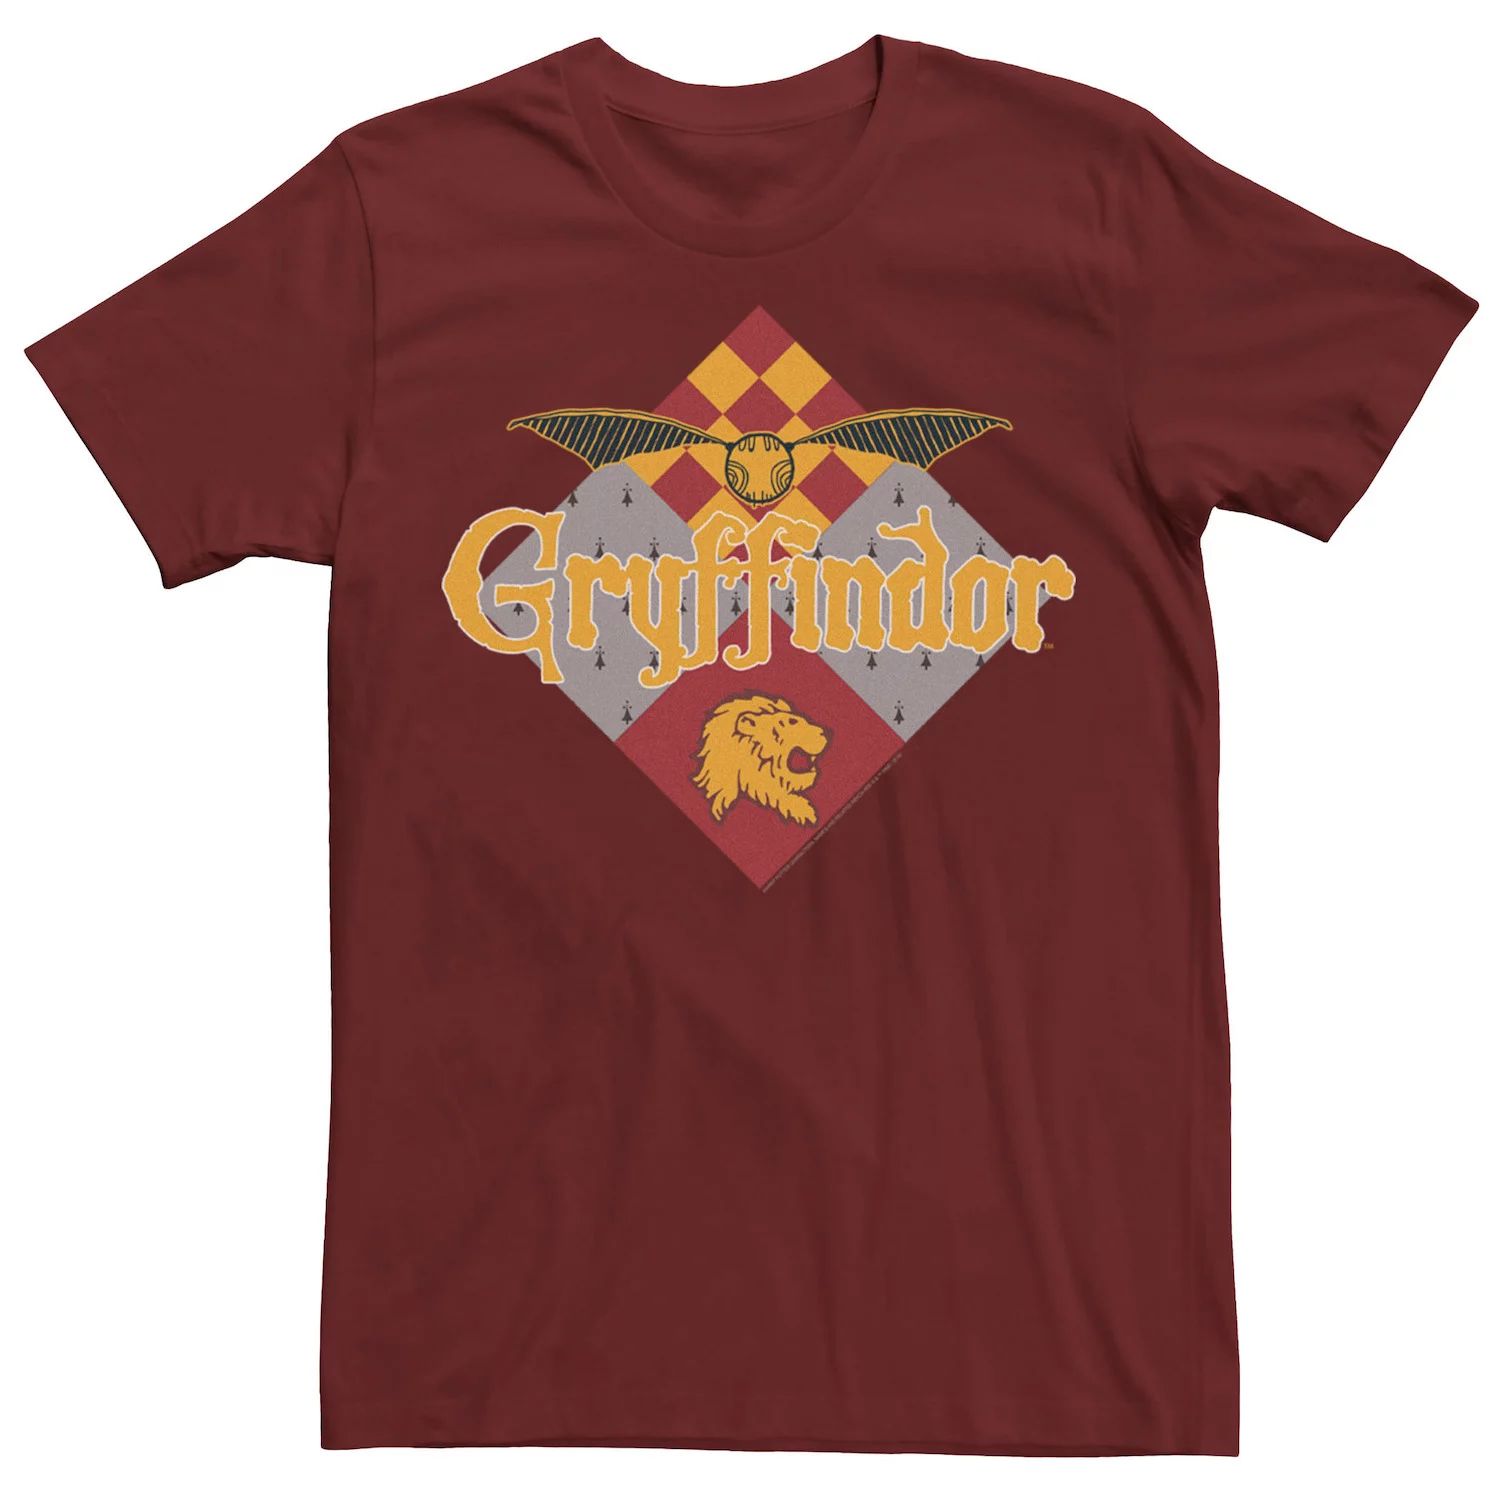 Мужская футболка с логотипом Gryffindor Golden Snitch Harry Potter копилка harry potter golden snitch